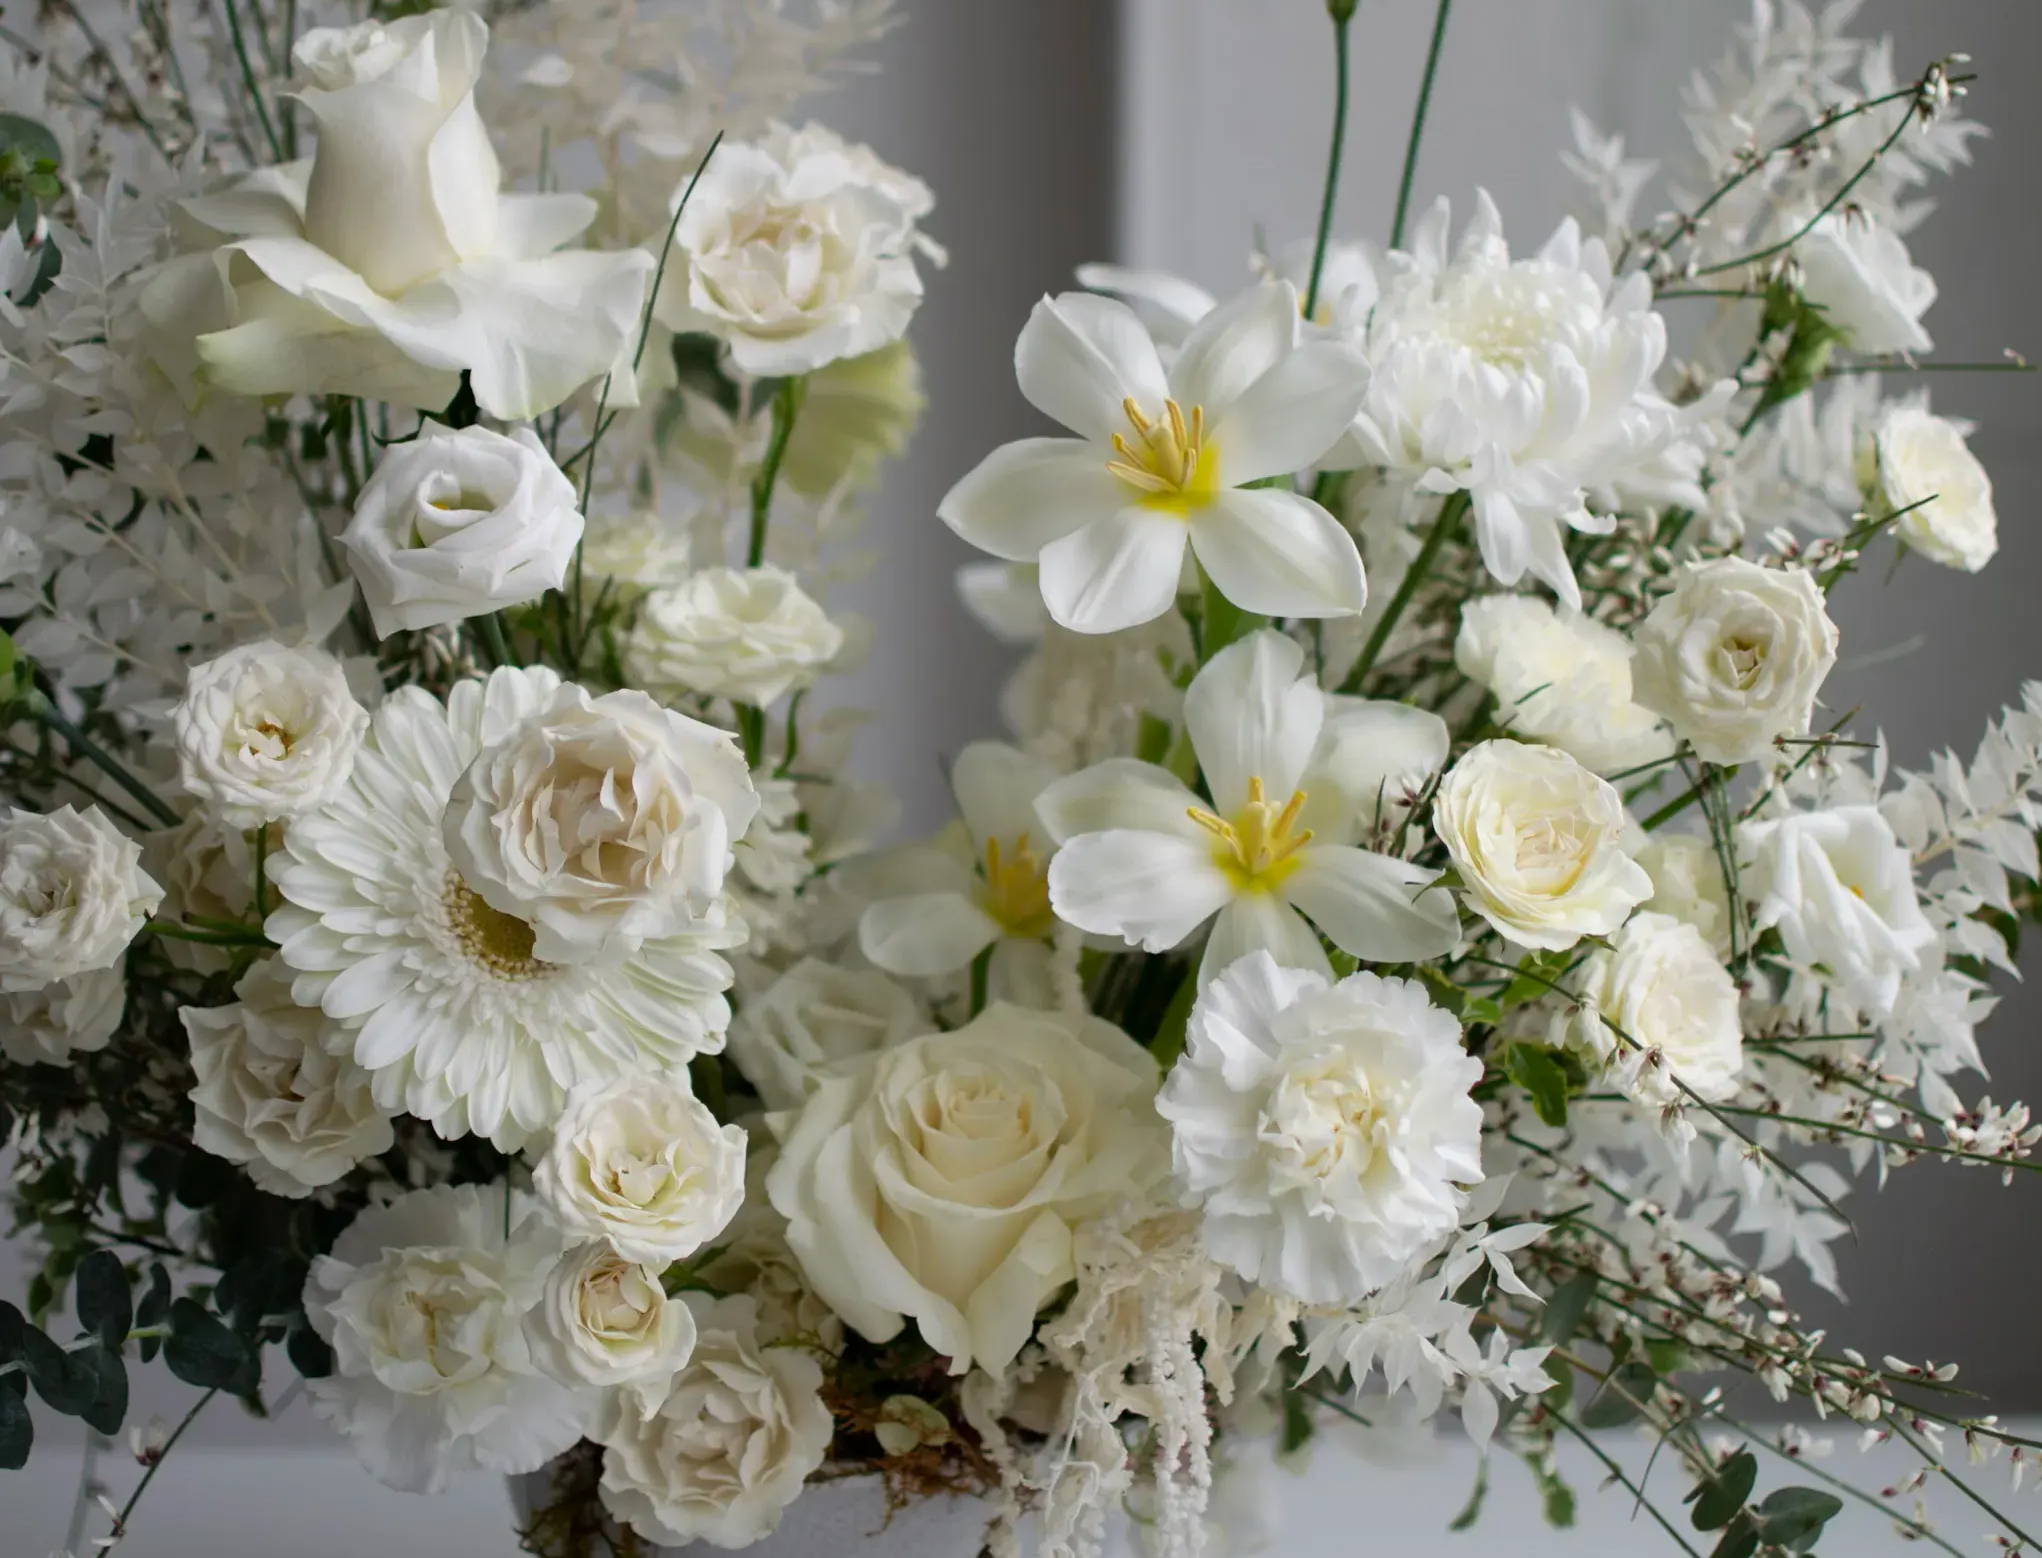 Condolence Flowers Etiquette - A Florist Guide You Should Follow